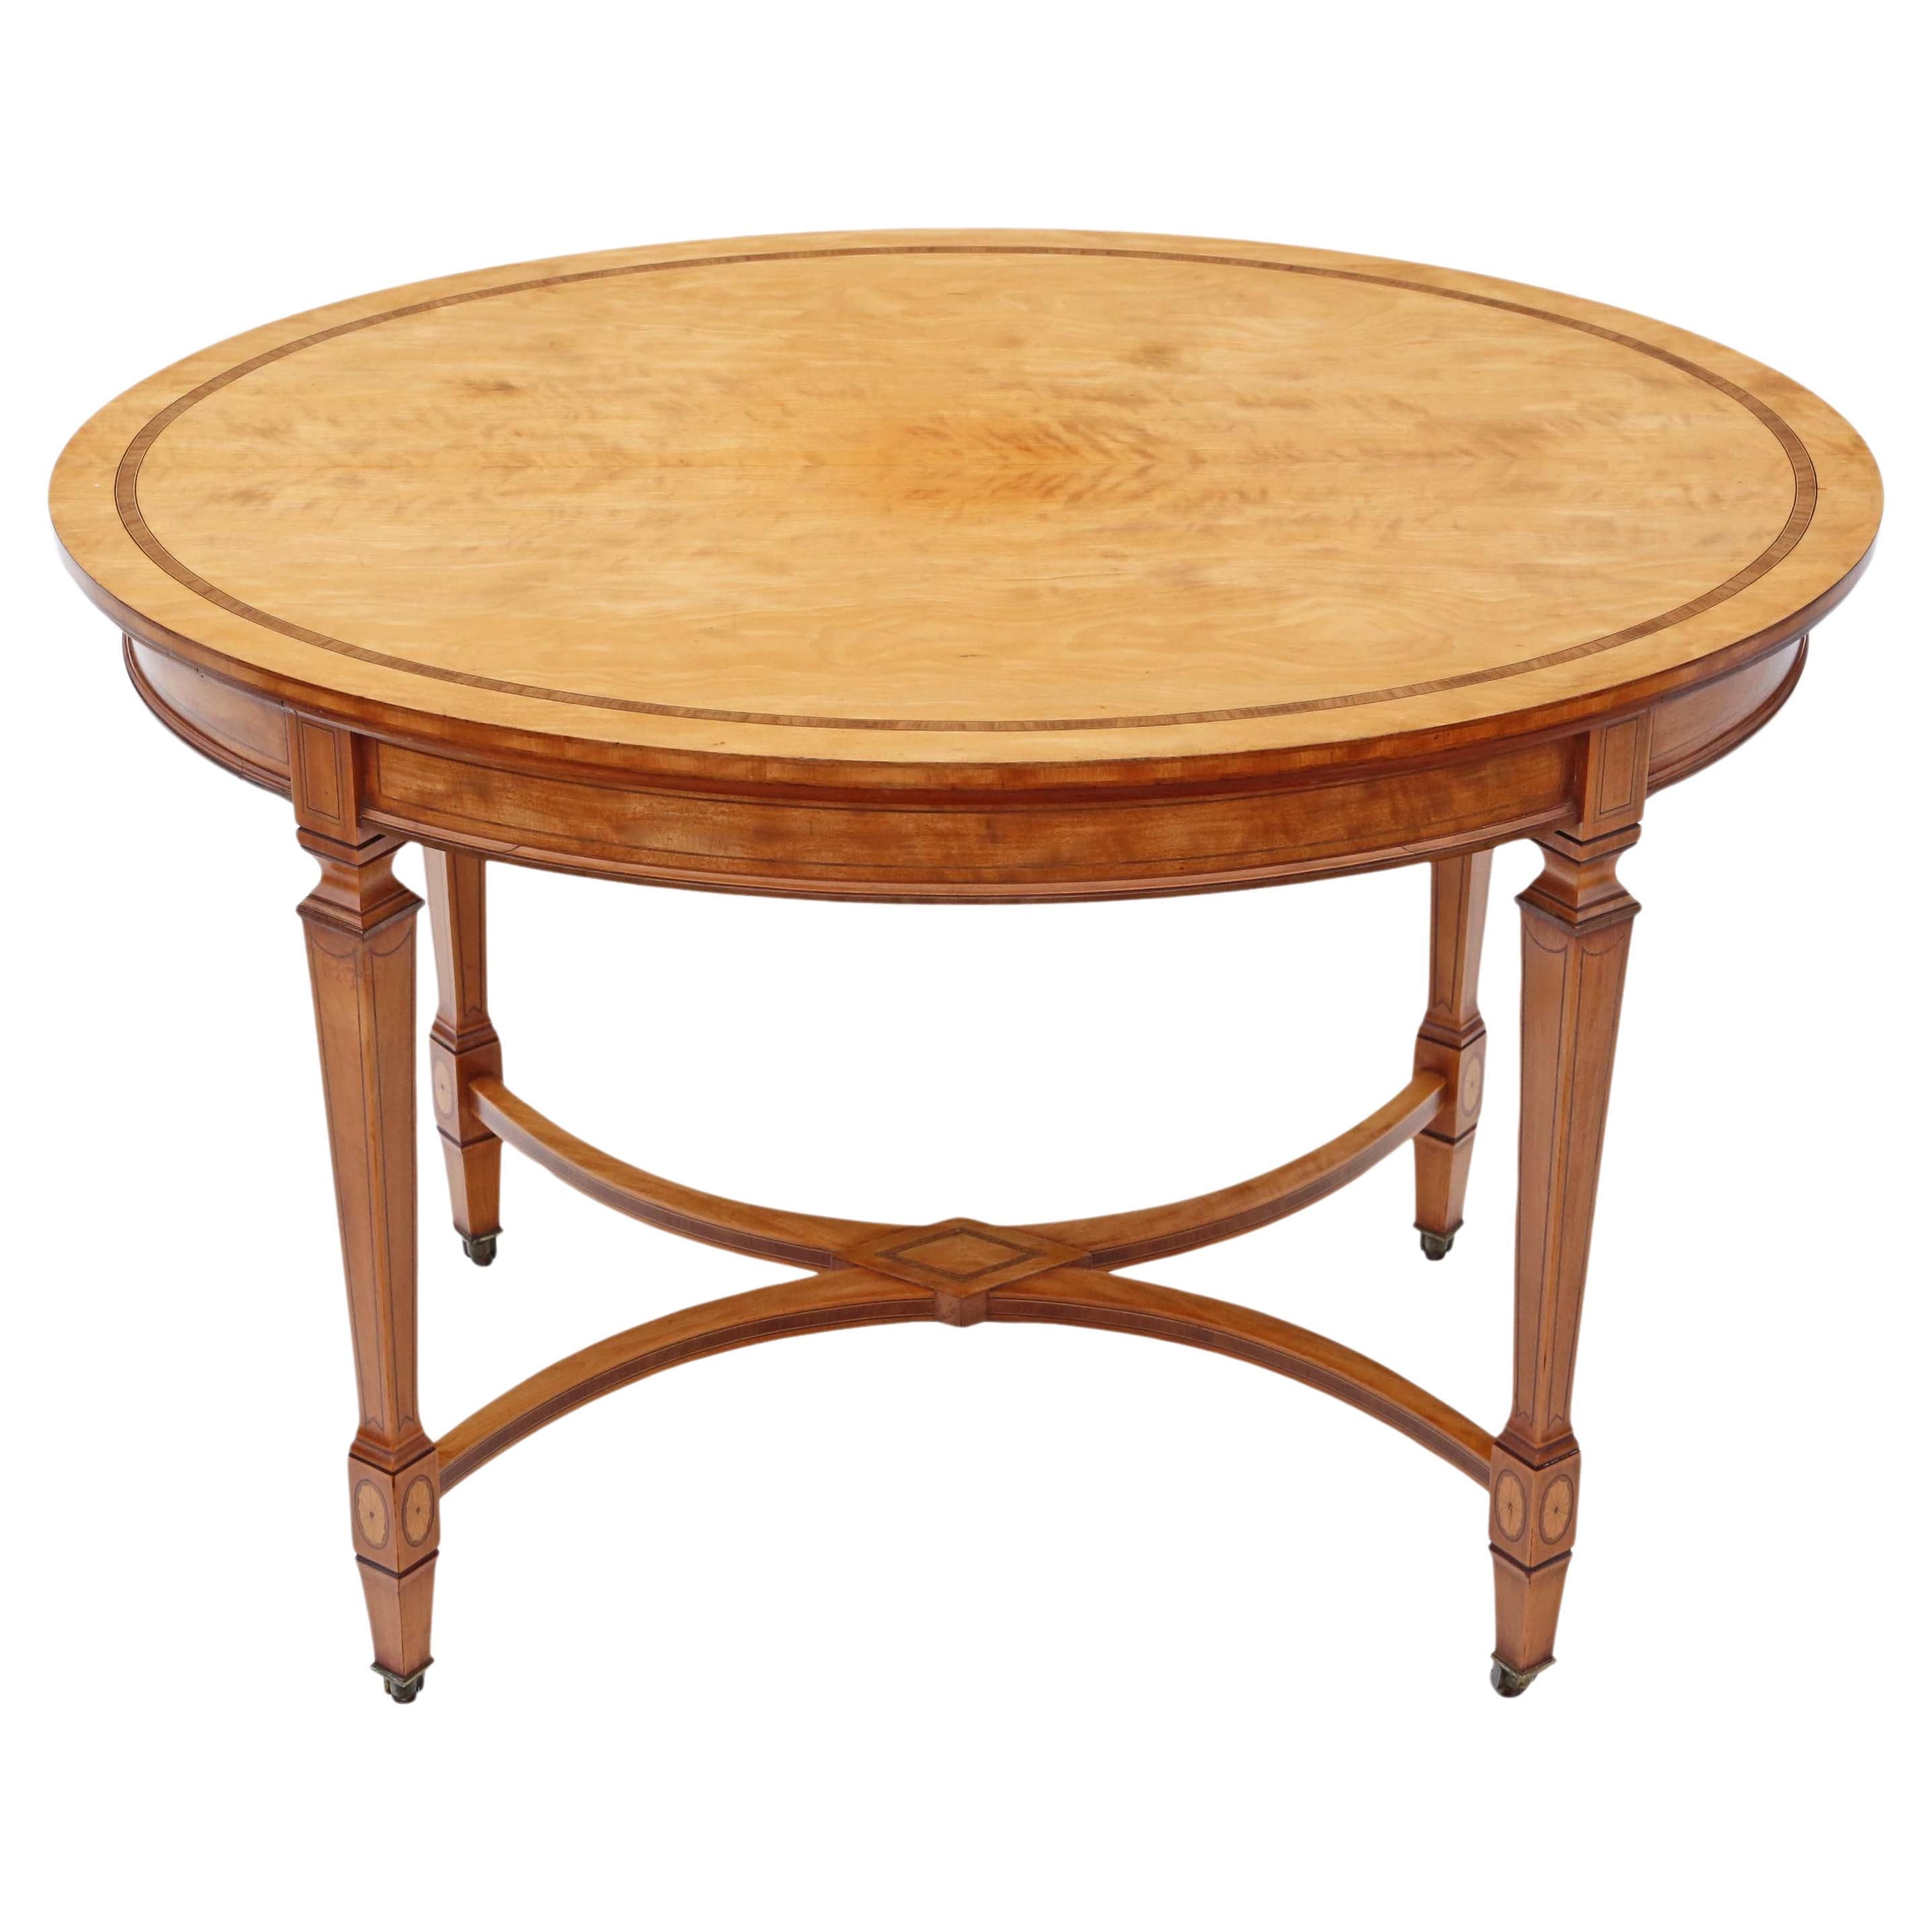 Table centrale victorienne en bois de satin incrusté de belle qualité, circa 1880-1900, Antiq